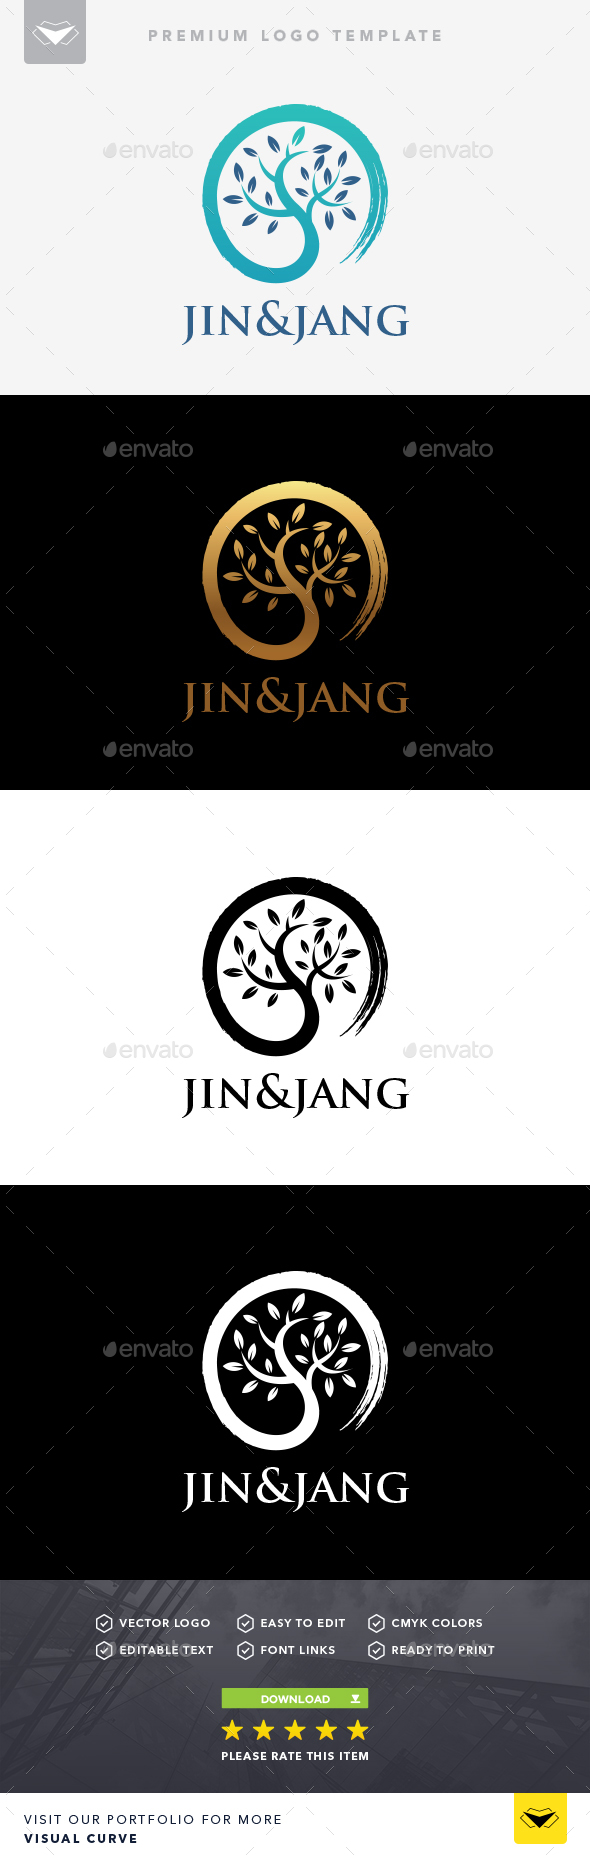 Jin and Jang Logo